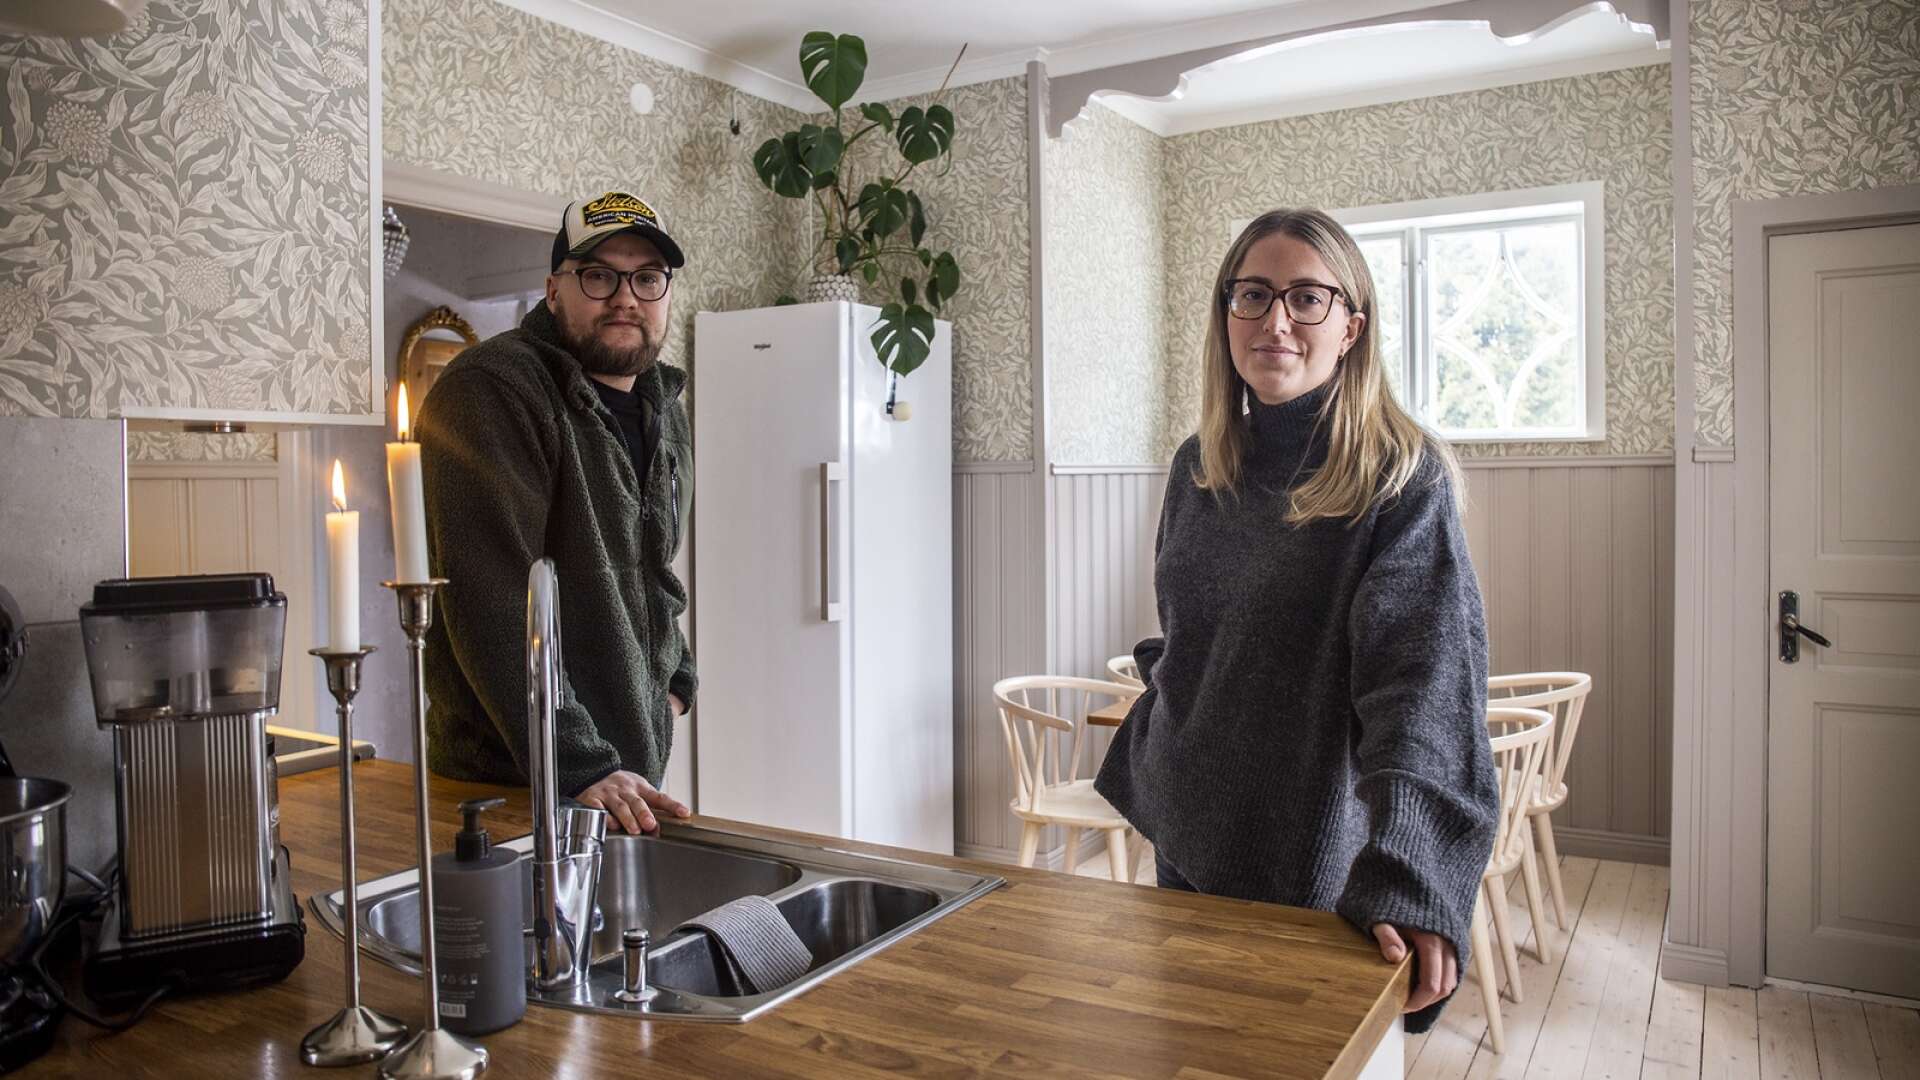 Efter flera års jakt på drömhuset hittade Oscar Svensson och Lovisa Johansson rätt. Nu bor de i en villa från 1932 i centrala Åmål, och är i full gång att sätta sin egen prägel på huset.